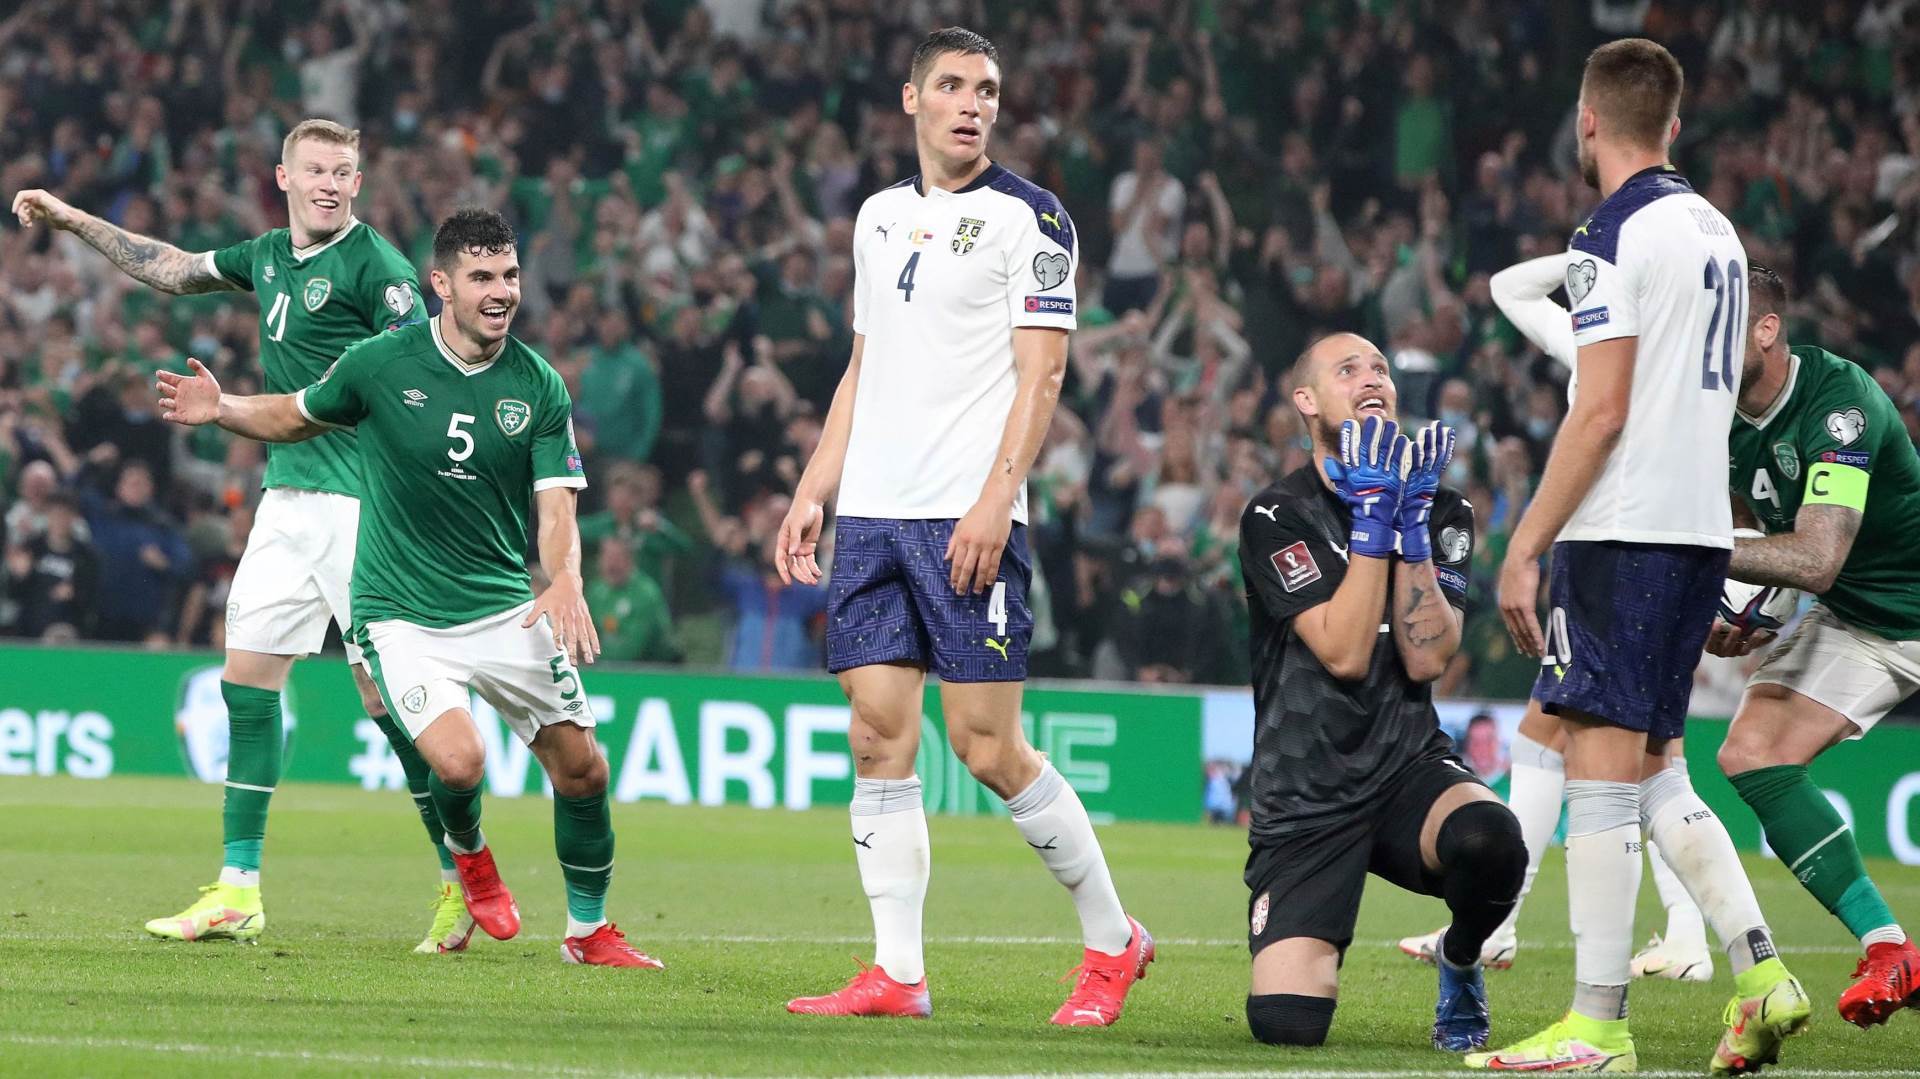  svjetsko prvenstvo 2022 kvalifikacije irska srbija 1 1 autogol 